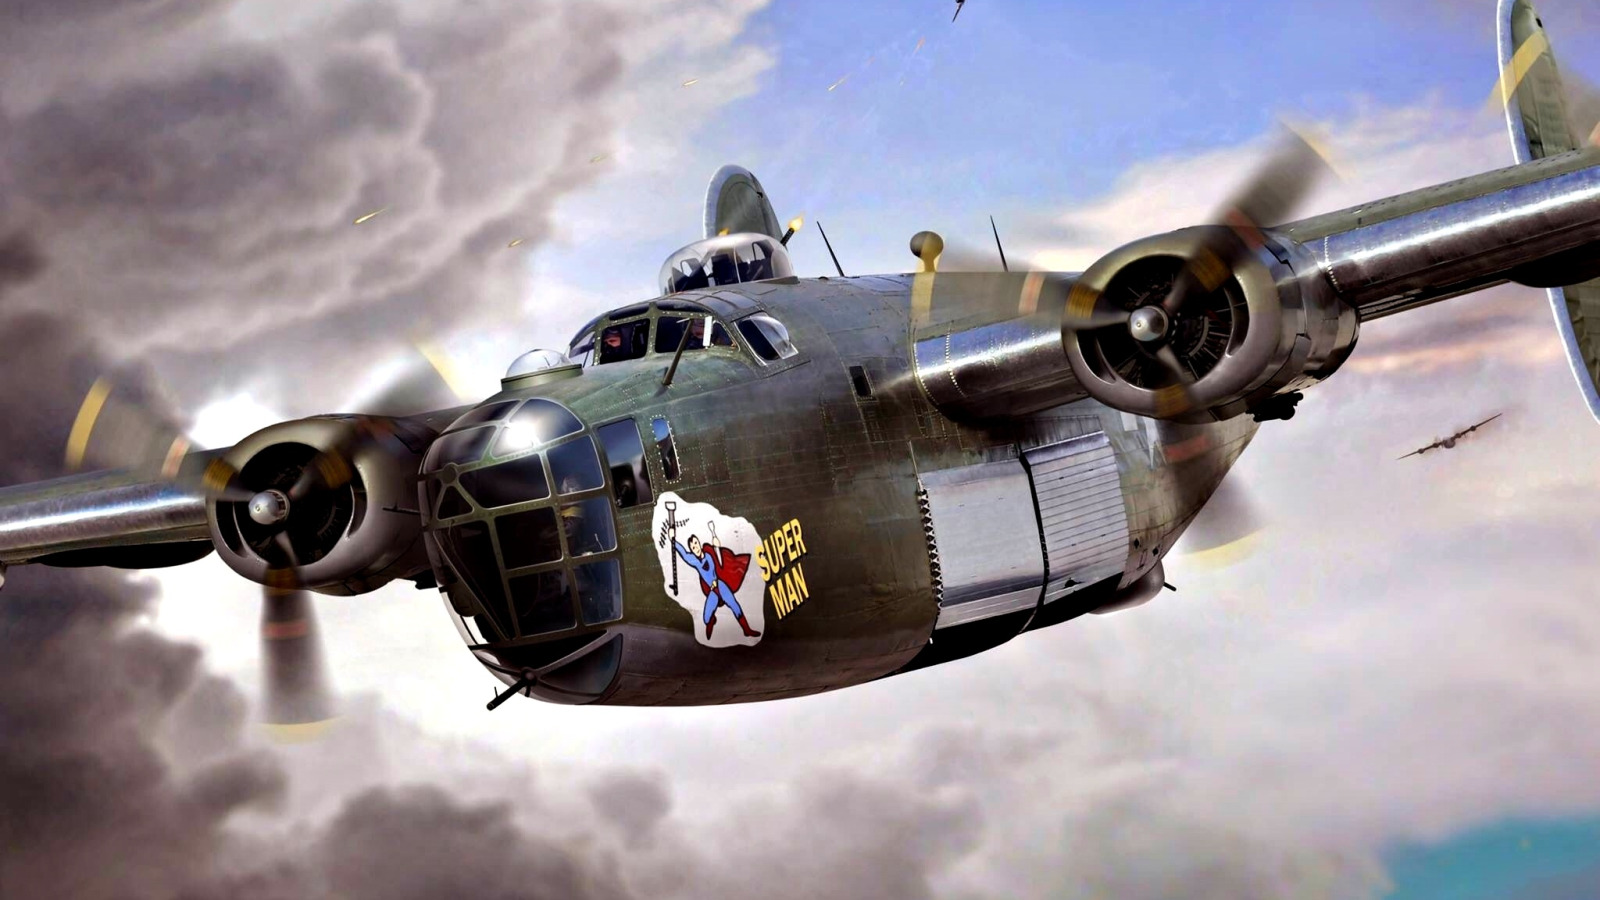 Бомбардировщик 2024. Б-24 Либерейтор. Бомбардировщики 2 мировой войны. Самолёты второй мировой войны 1939-1945. Французские бомбардировщики второй мировой войны.